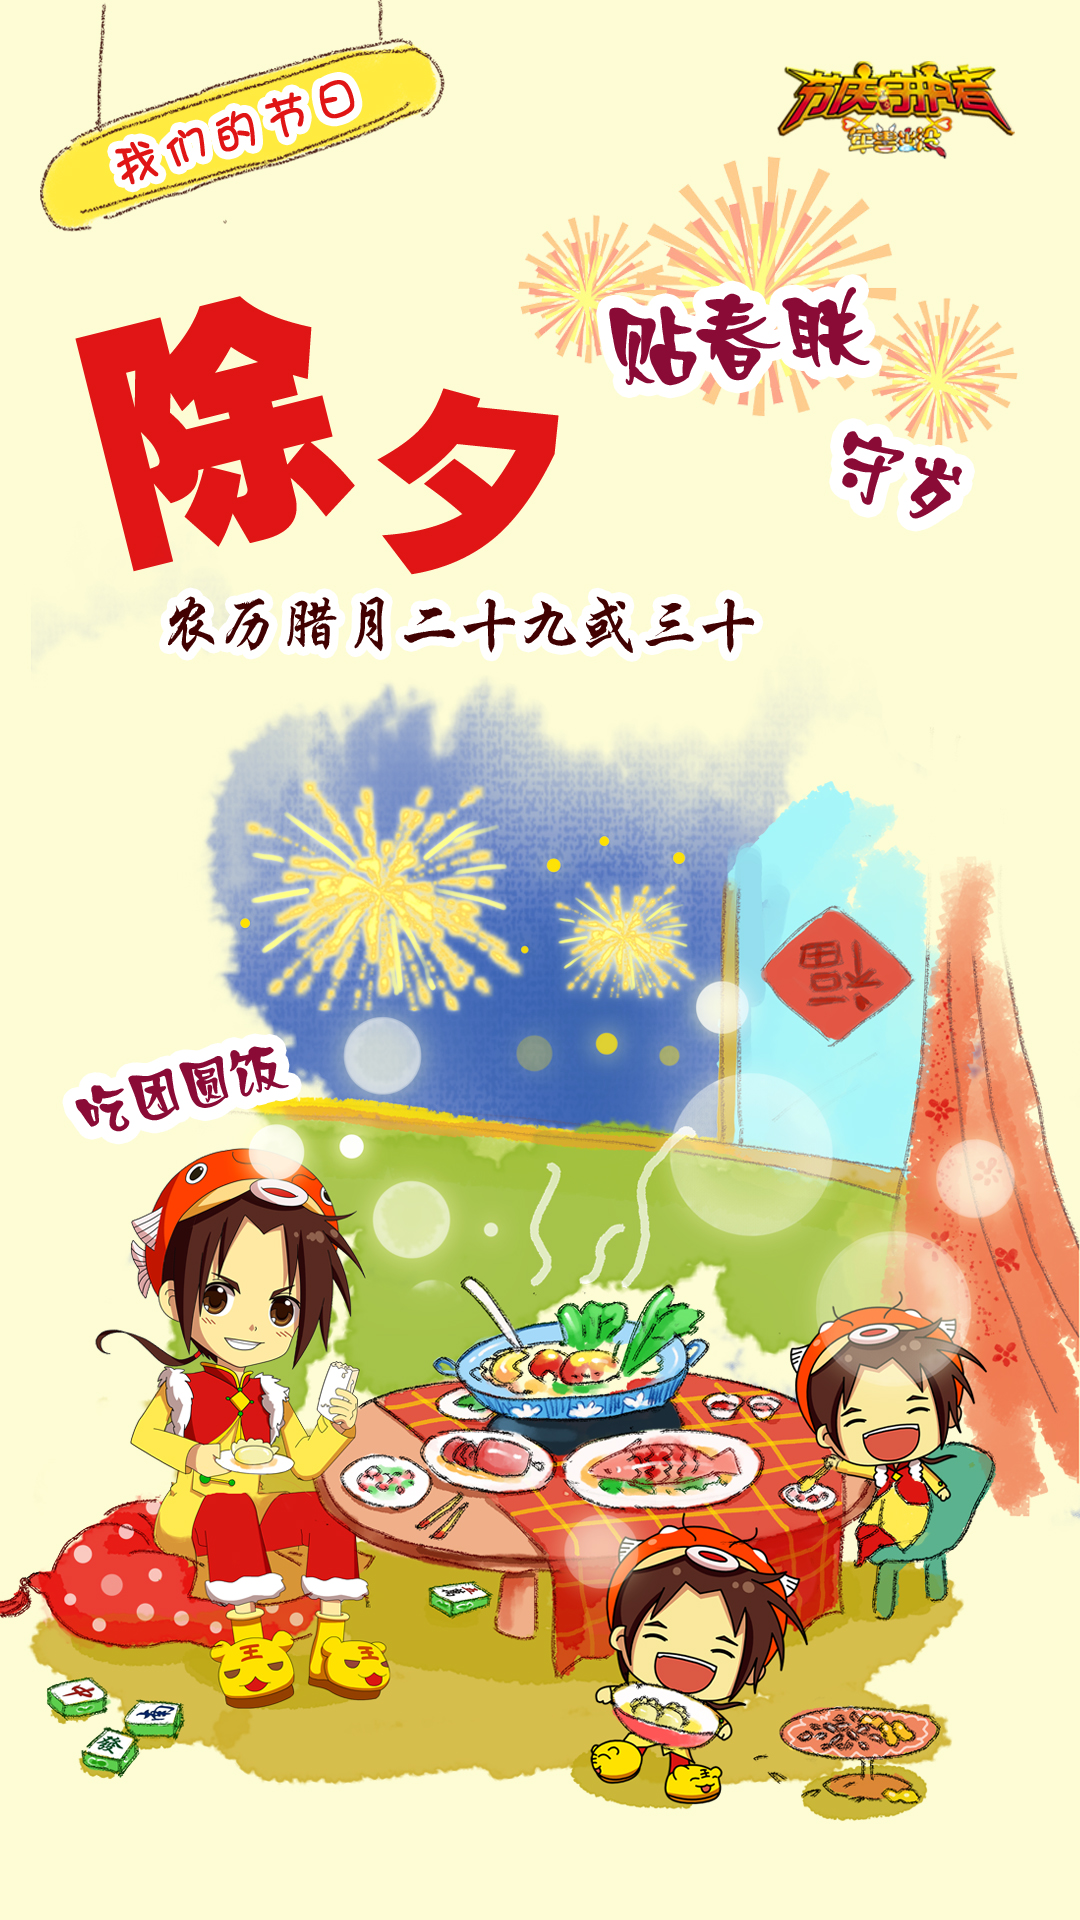 中华传统节庆 中国节日 素材手机壁纸设计 节庆守护者团队制作